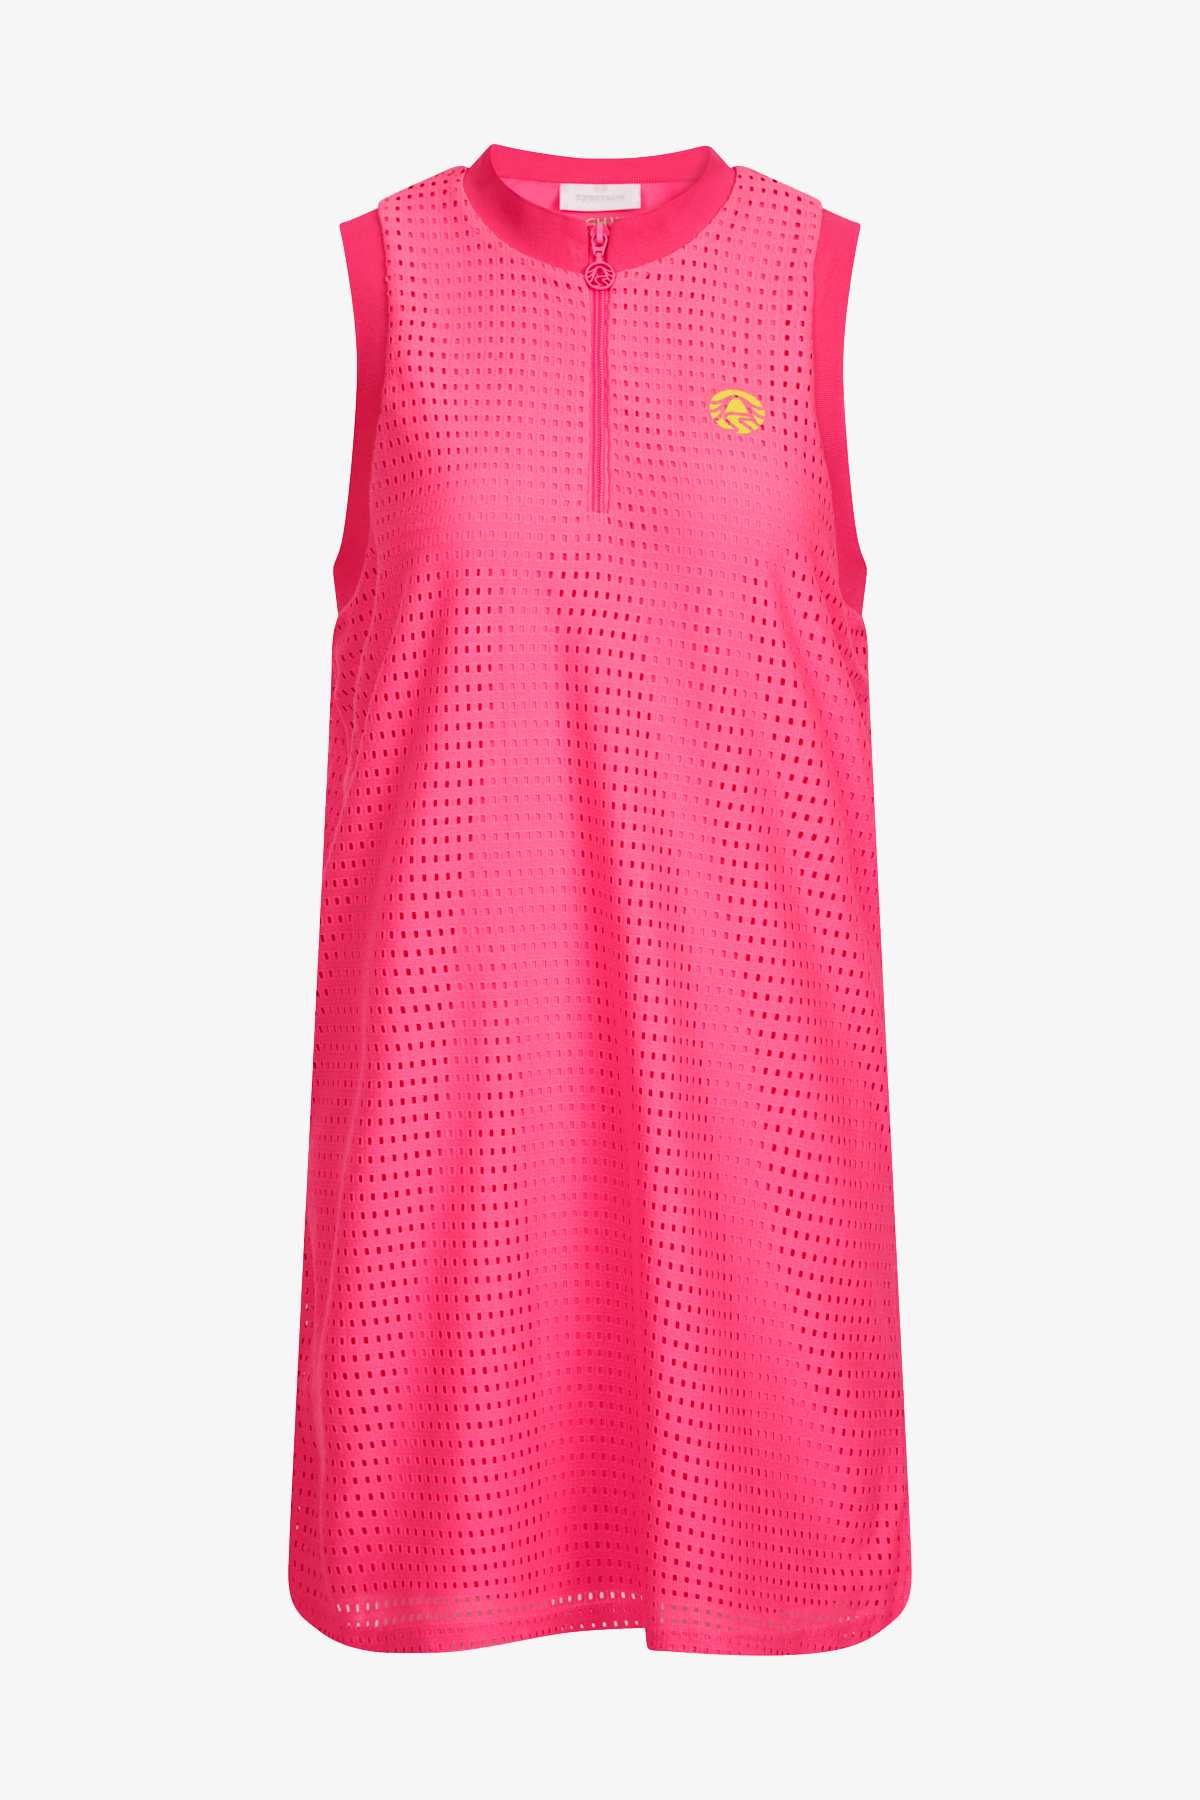 Sportalm šaty Dolly candy pink Velikost: 34